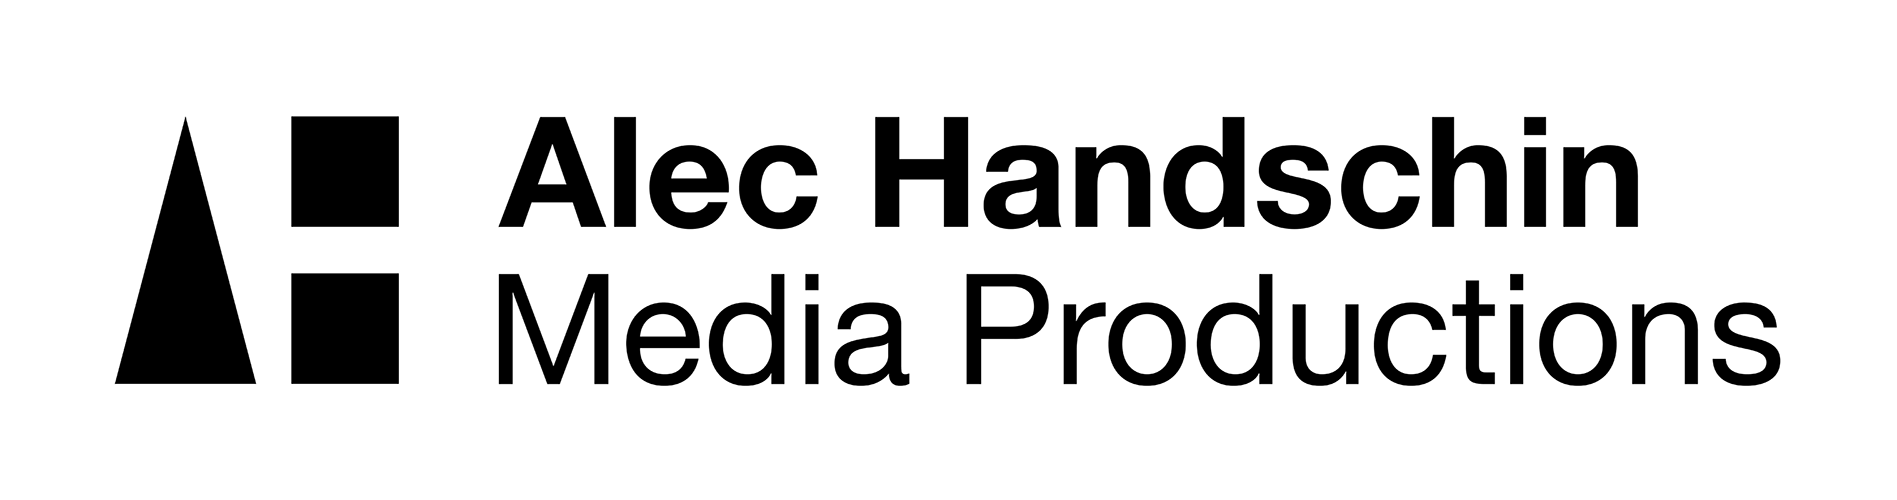 Alec Handschin Media Productions